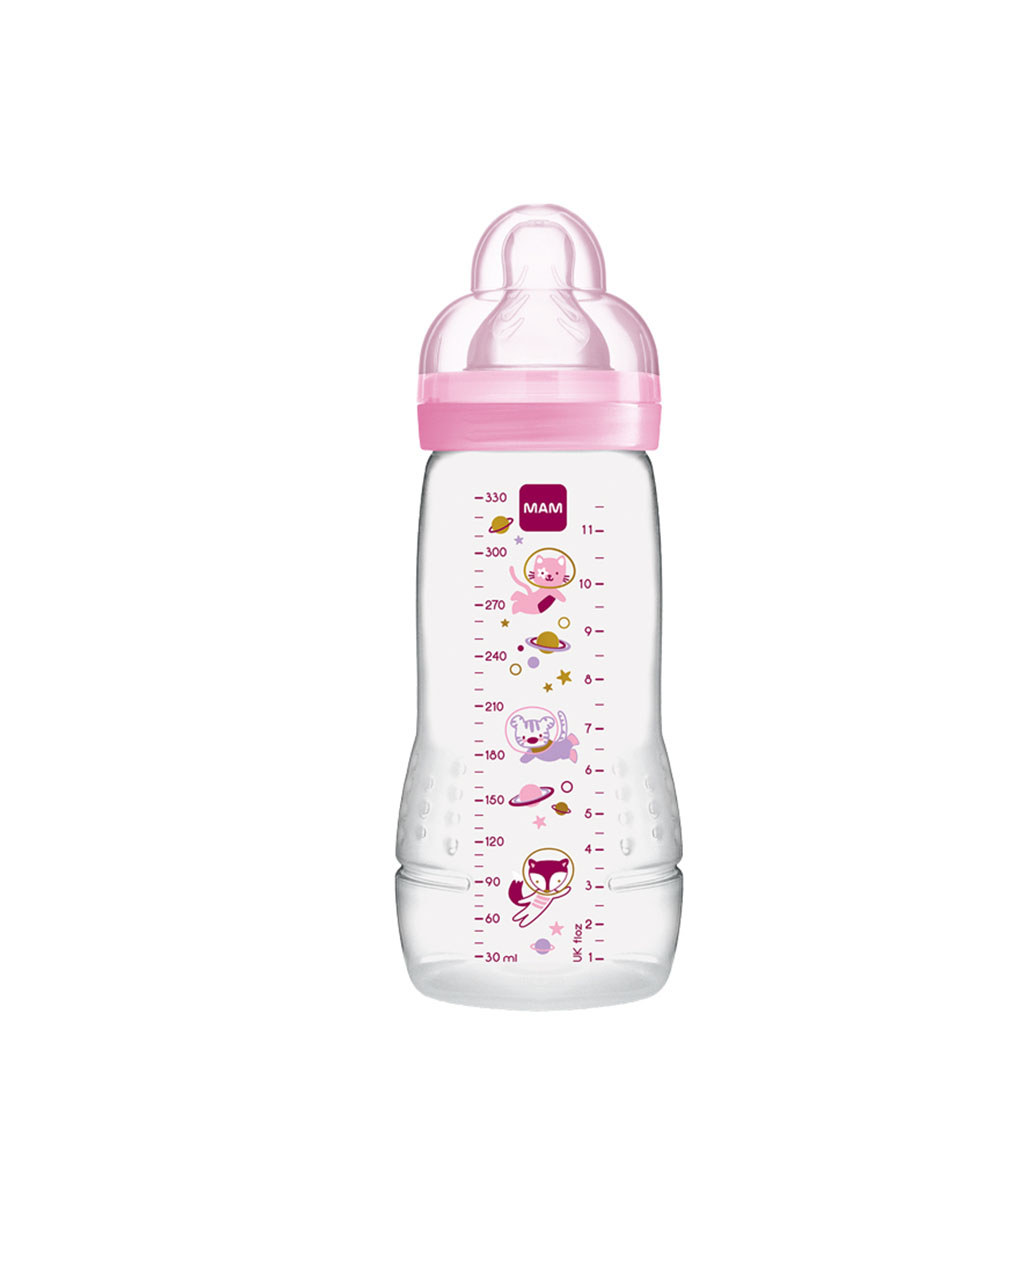 Mam μπιμπερό easy active baby bottle 330ml girl 4+ μηνών - Mam